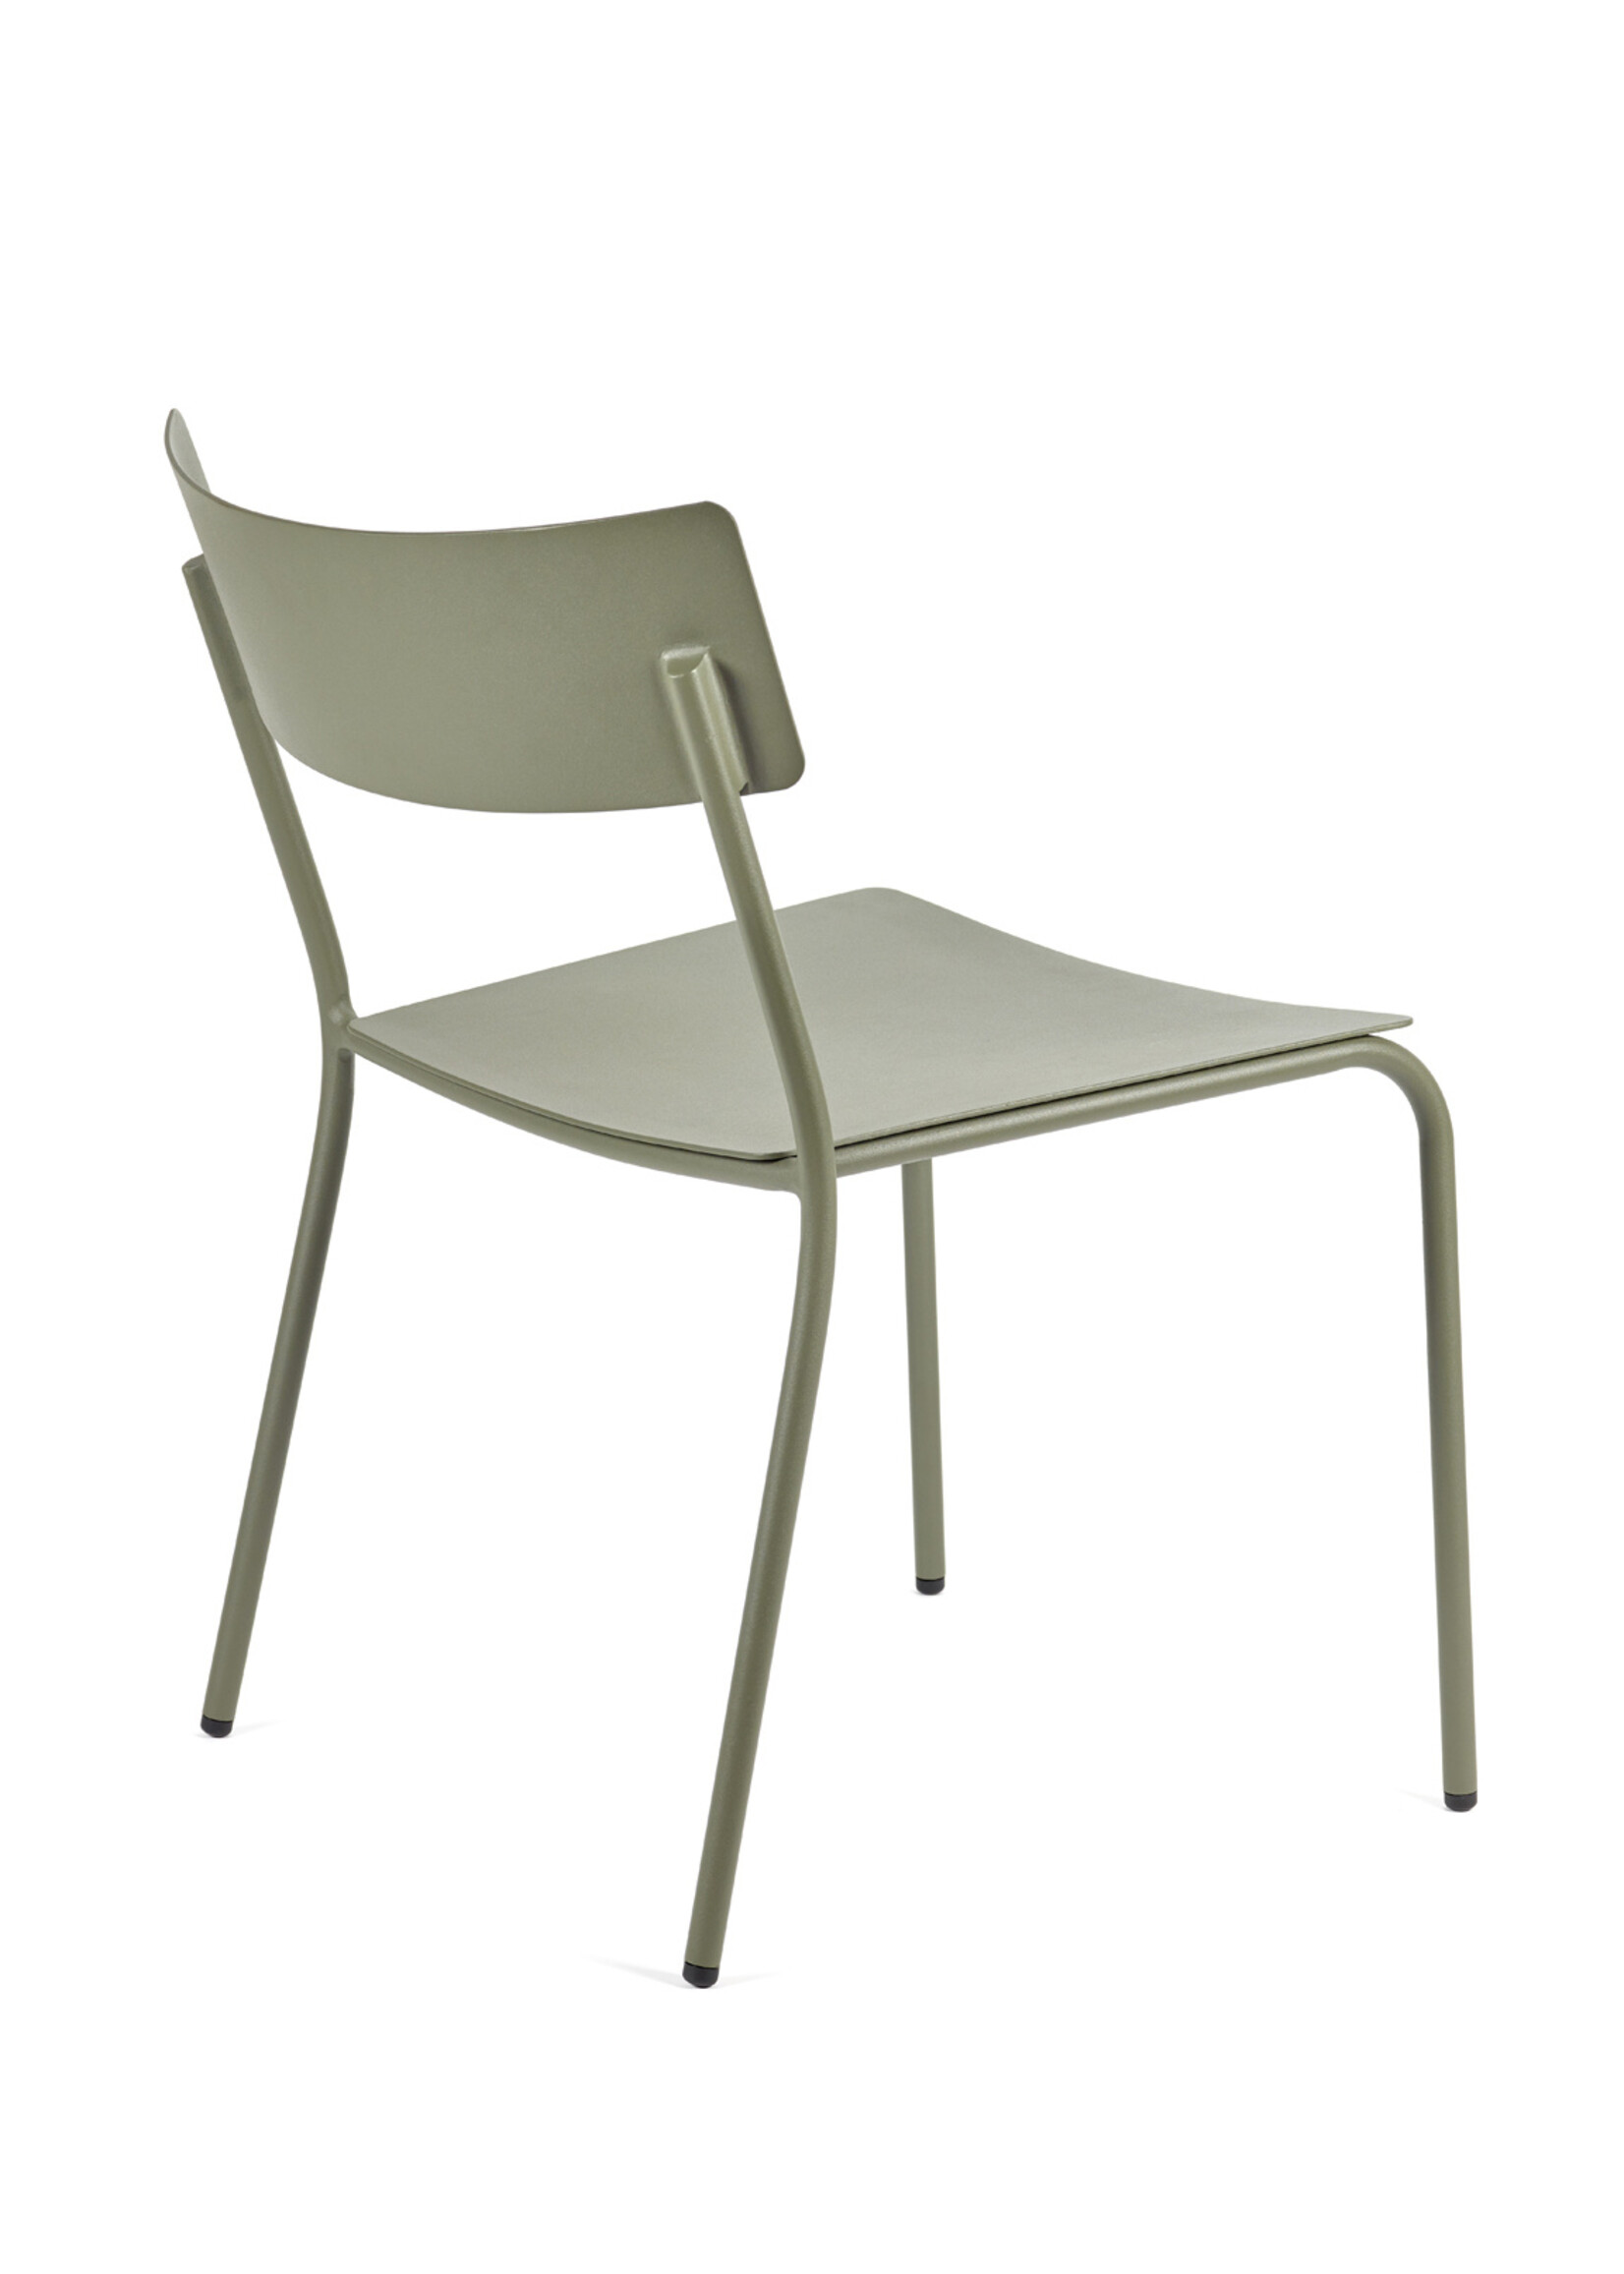 Serax August - Outdoor -  Chair - Eucalyptus Green